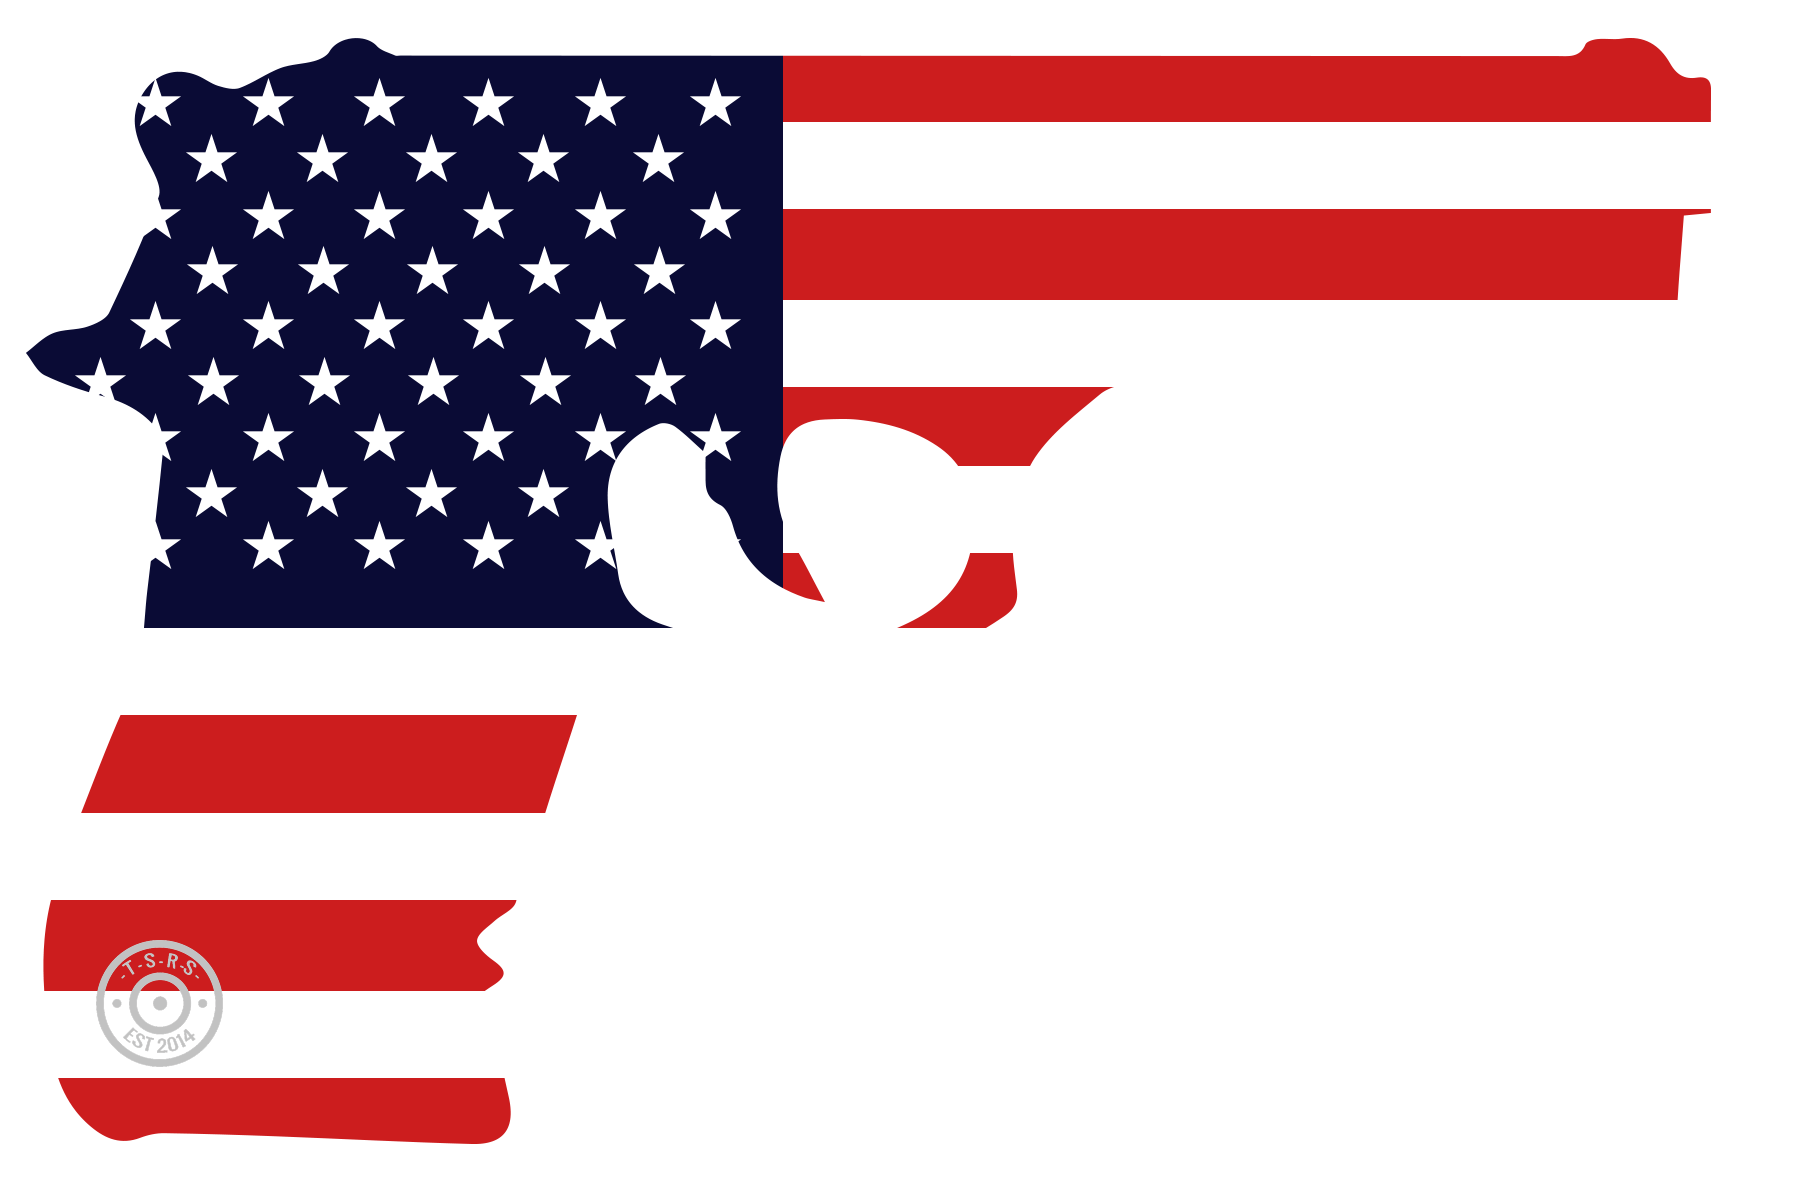 guns clipart american flag